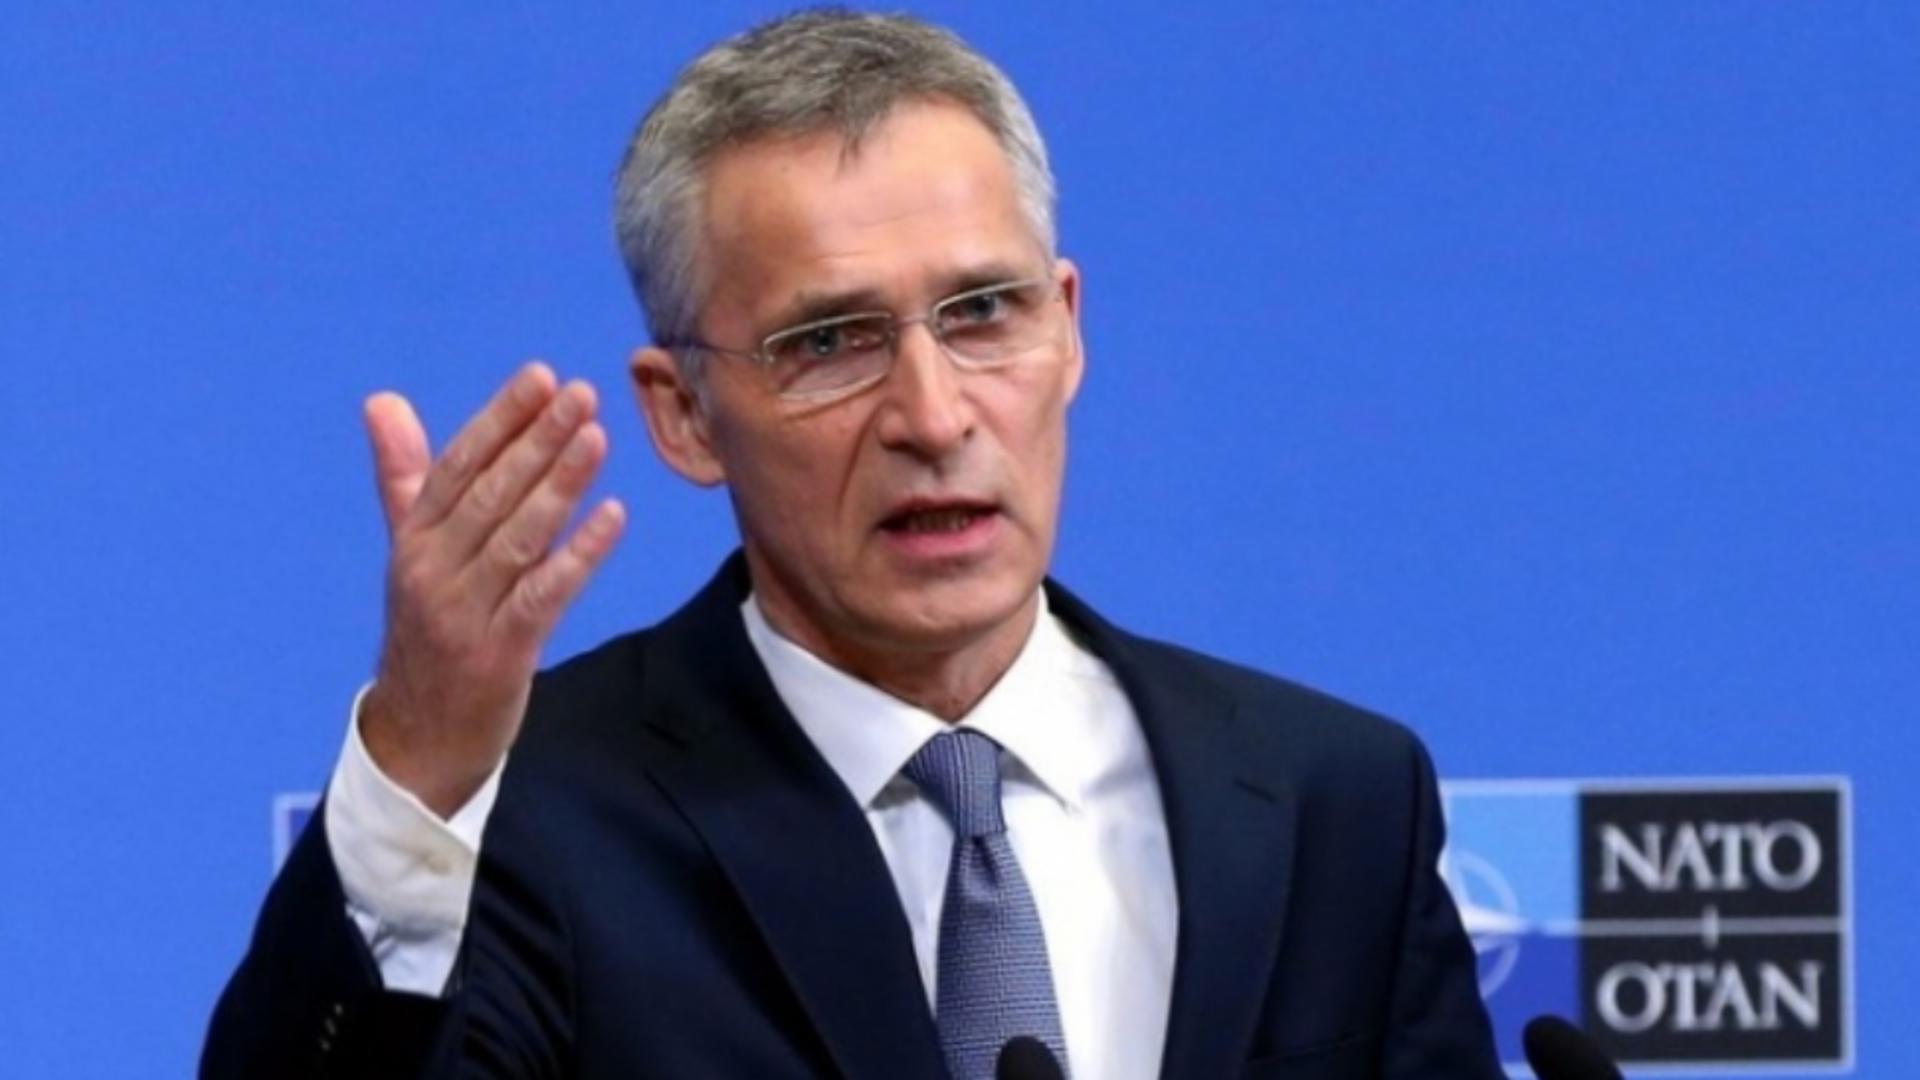 Șeful NATO: „Cerem Rusiei să oprească imediat acest război fără sens” - INFORMAȚII despre atacarea vreunui stat membru 